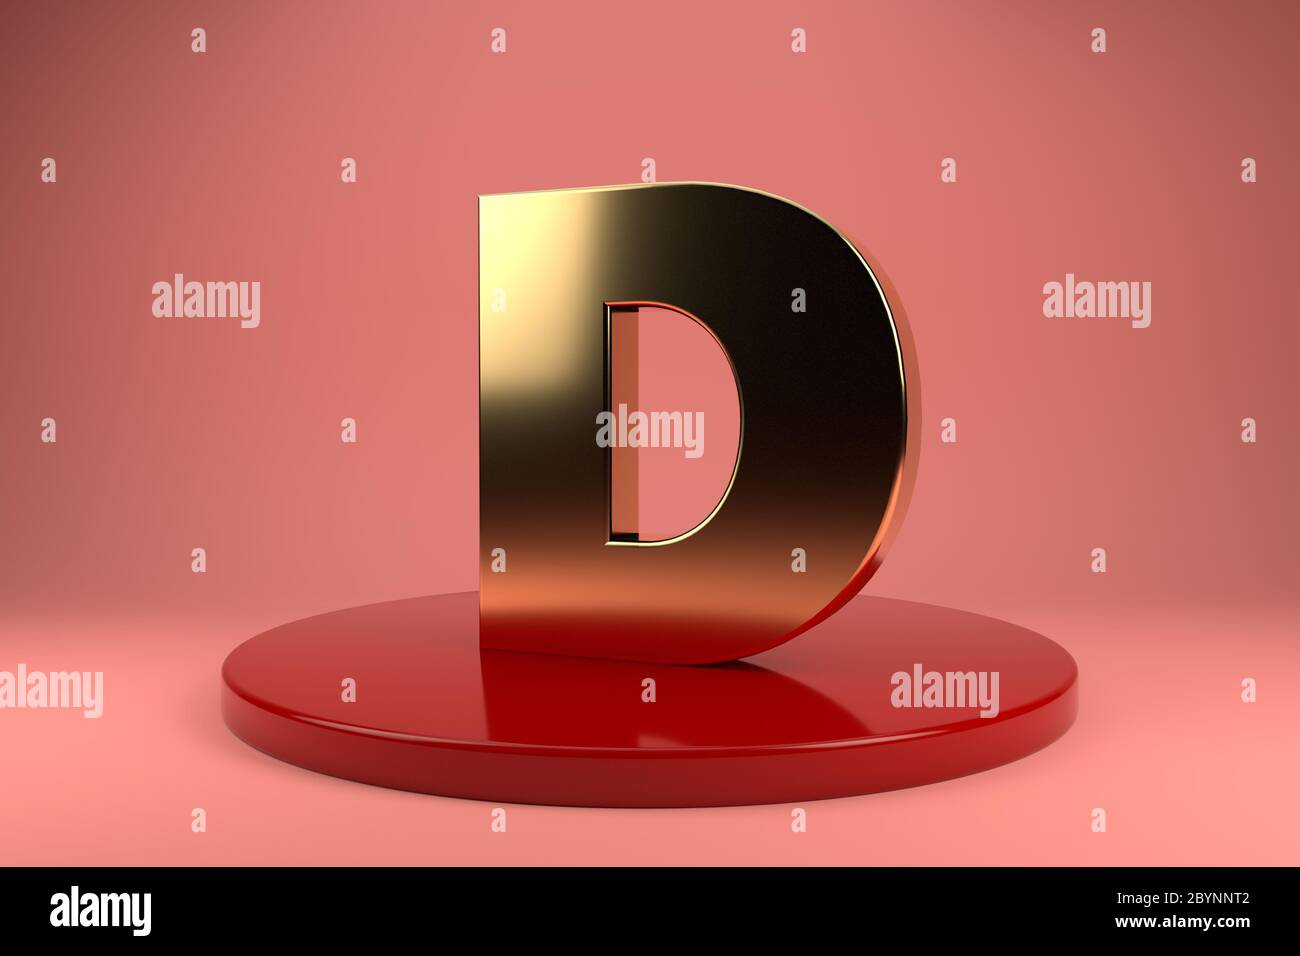 Golden Letter D uppercase wallpaper. 3d rendering. 3d illustrator Stock  Photo - Alamy